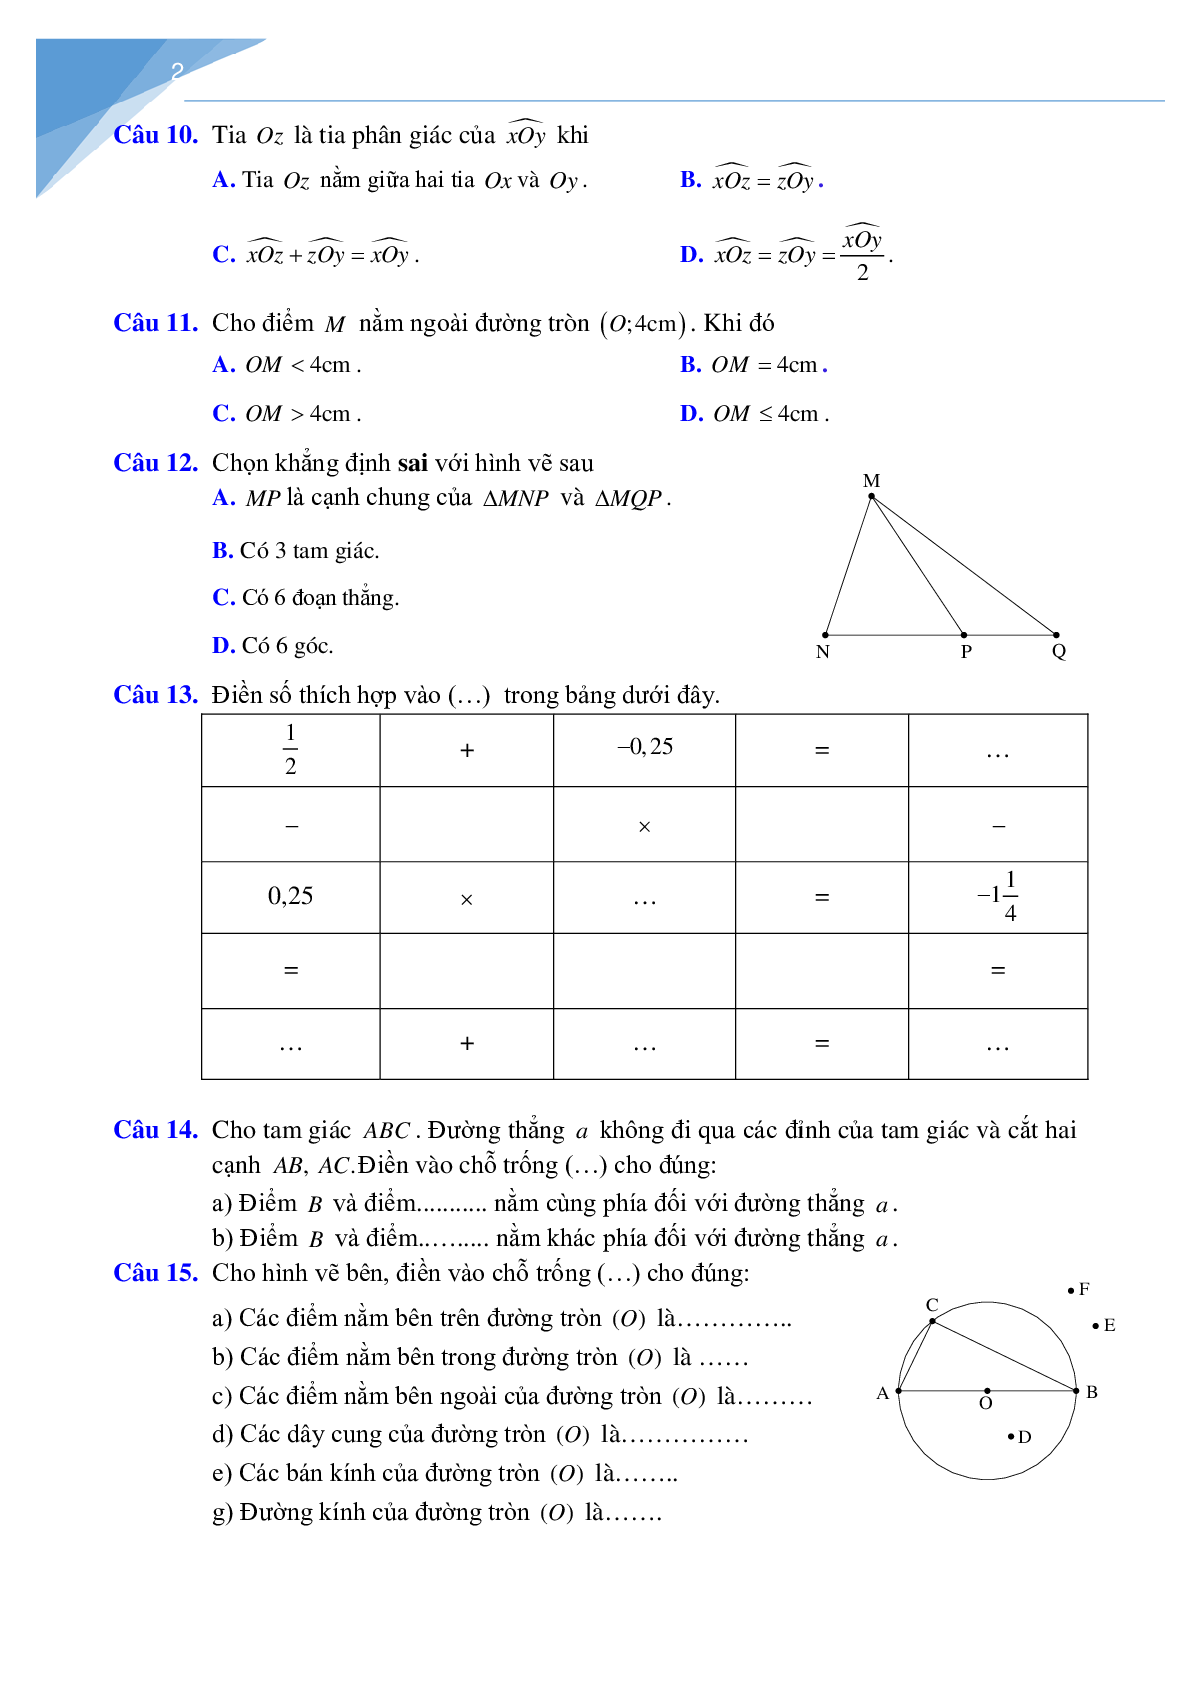 Đề cương học kì 2 môn toán lớp 6 Hà Nội (trang 2)